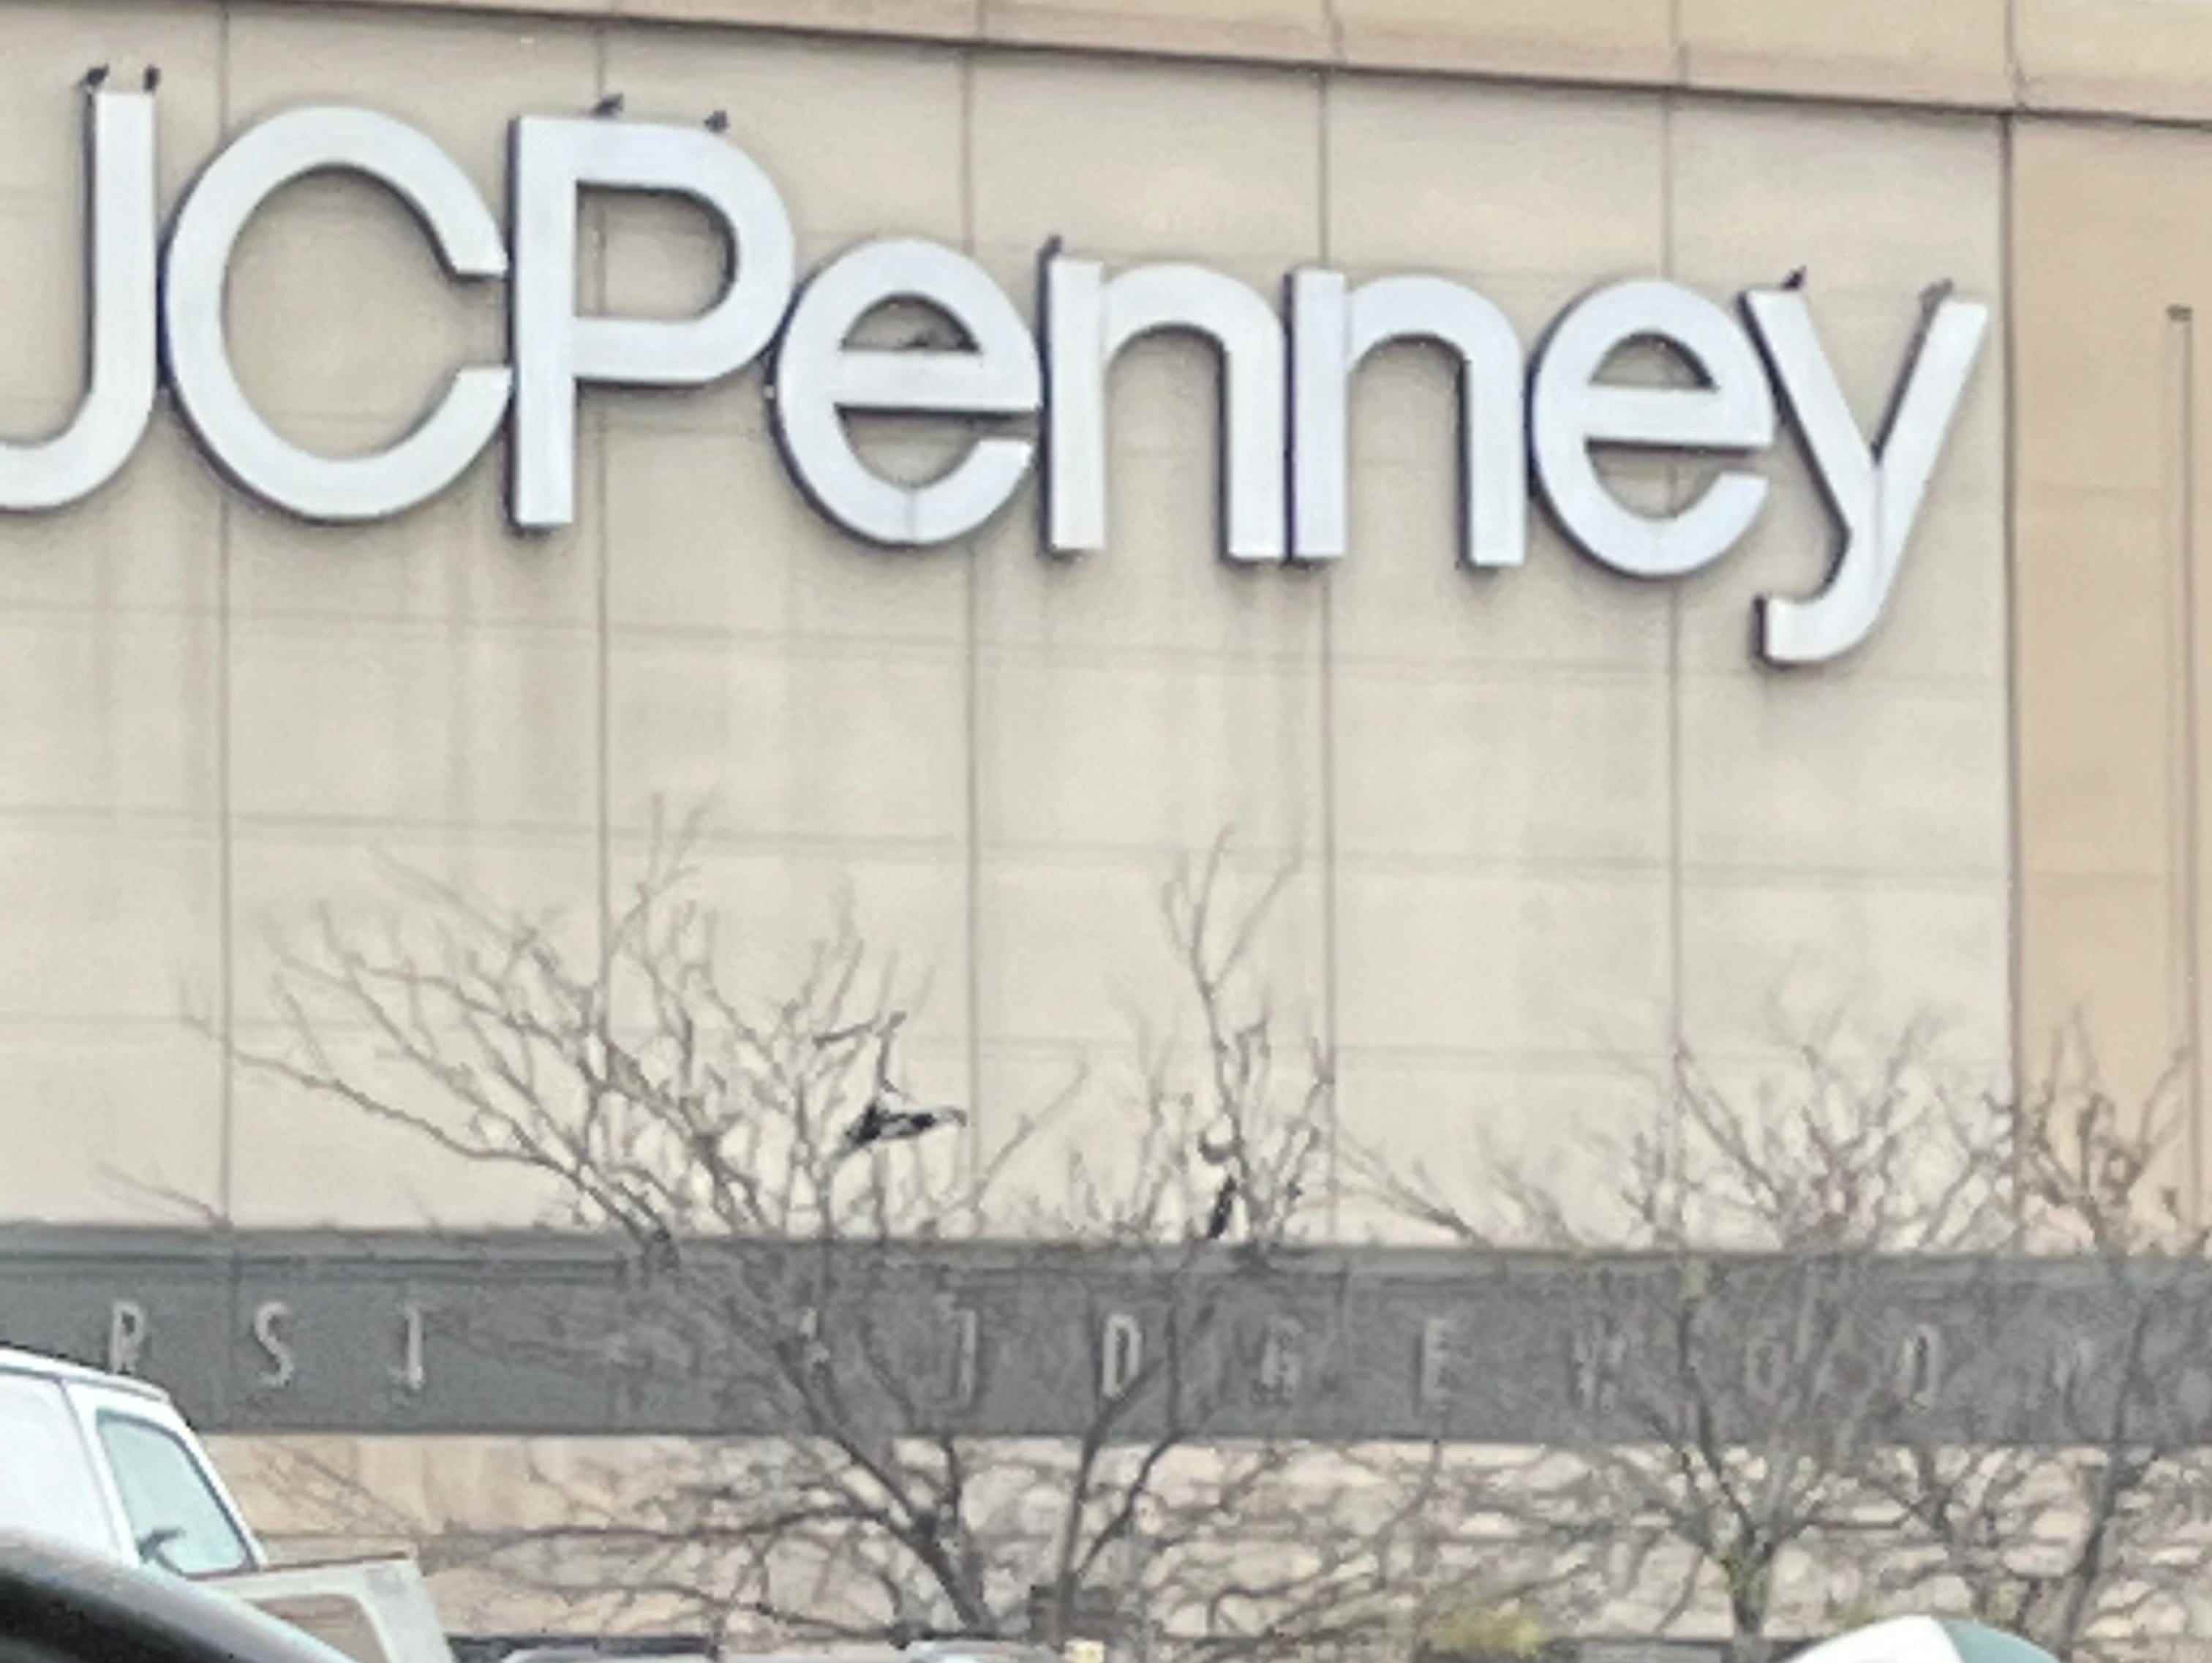 Das riesige JCPenney-Schild an der Außenseite des Einkaufszentrums Queens Center.